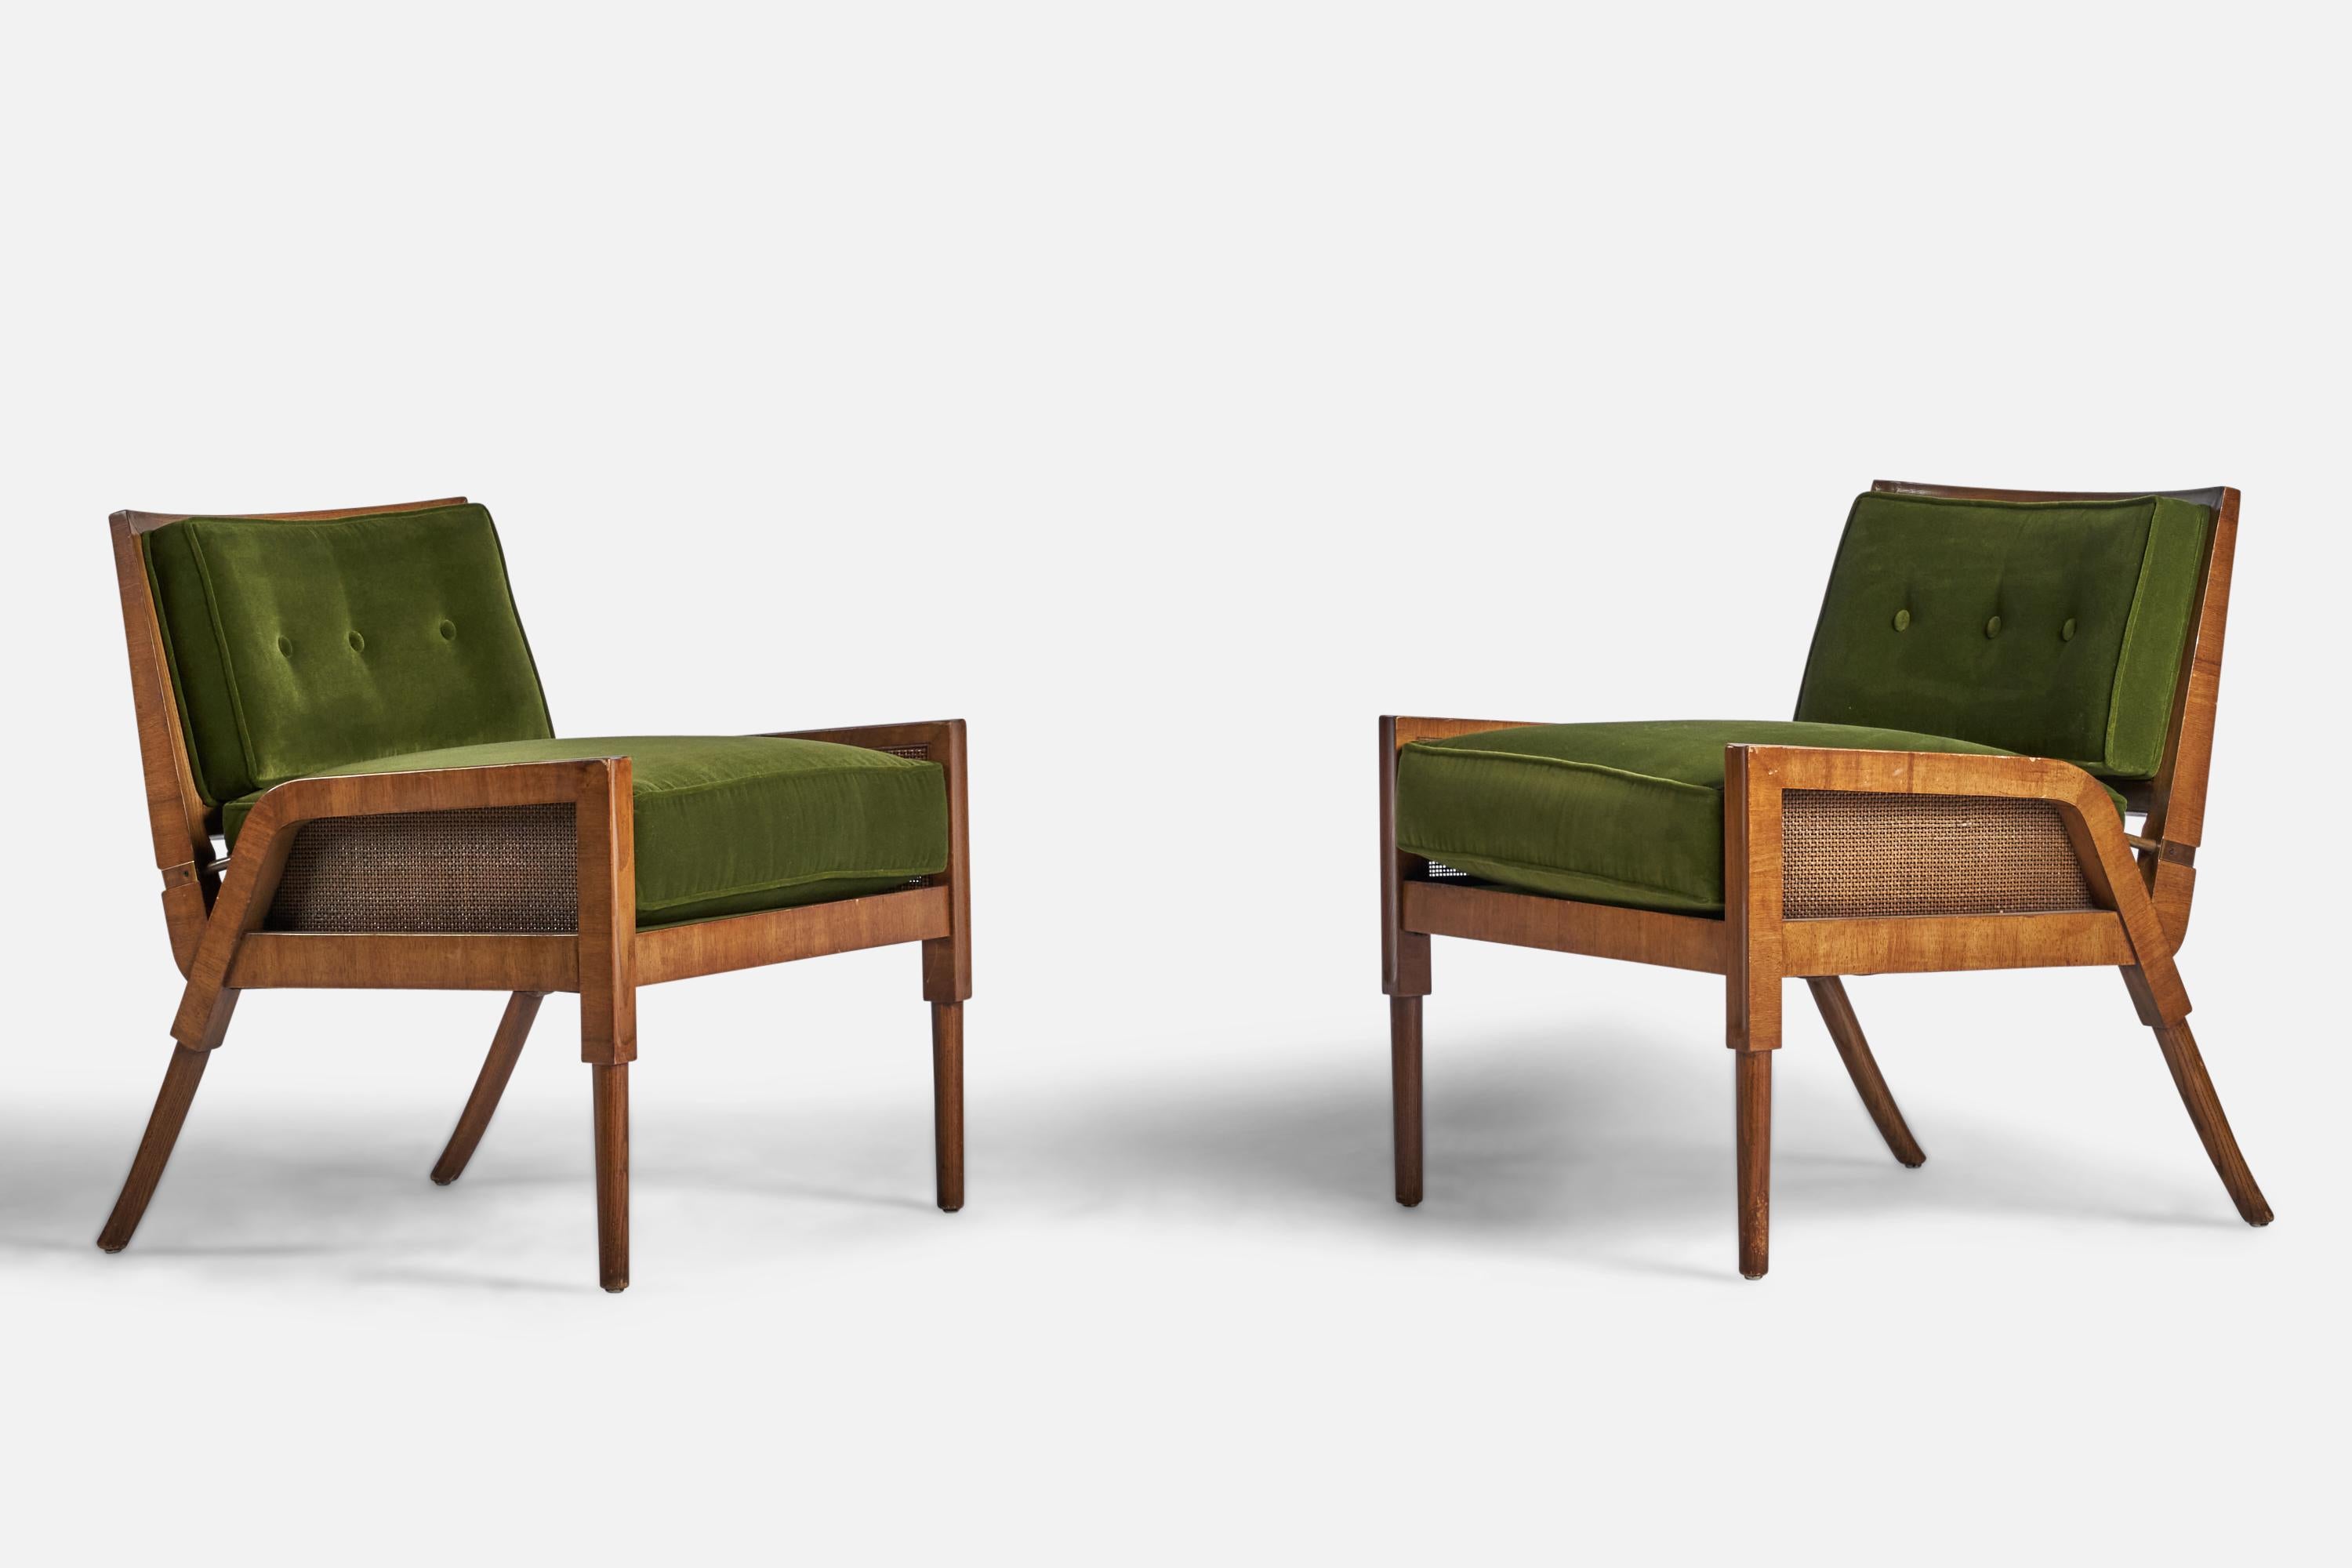 Paire de chaises longues en bois, canne et tissu de velours vert, conçues et produites par Mastercraft, États-Unis, années 1940.
Hauteur d'assise de 18,5 pouces